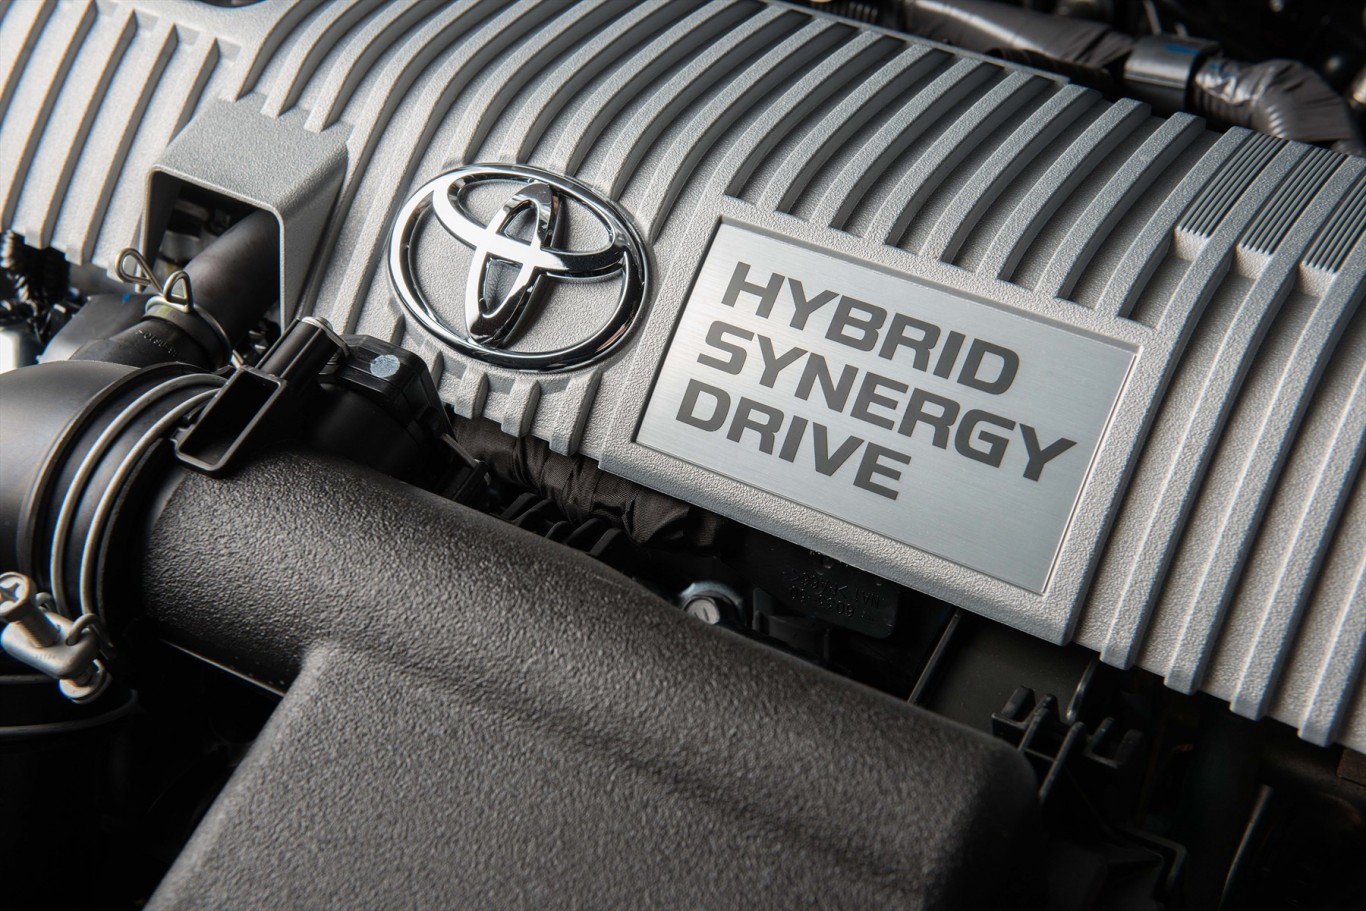 9-Million Toyota hybrid models sold